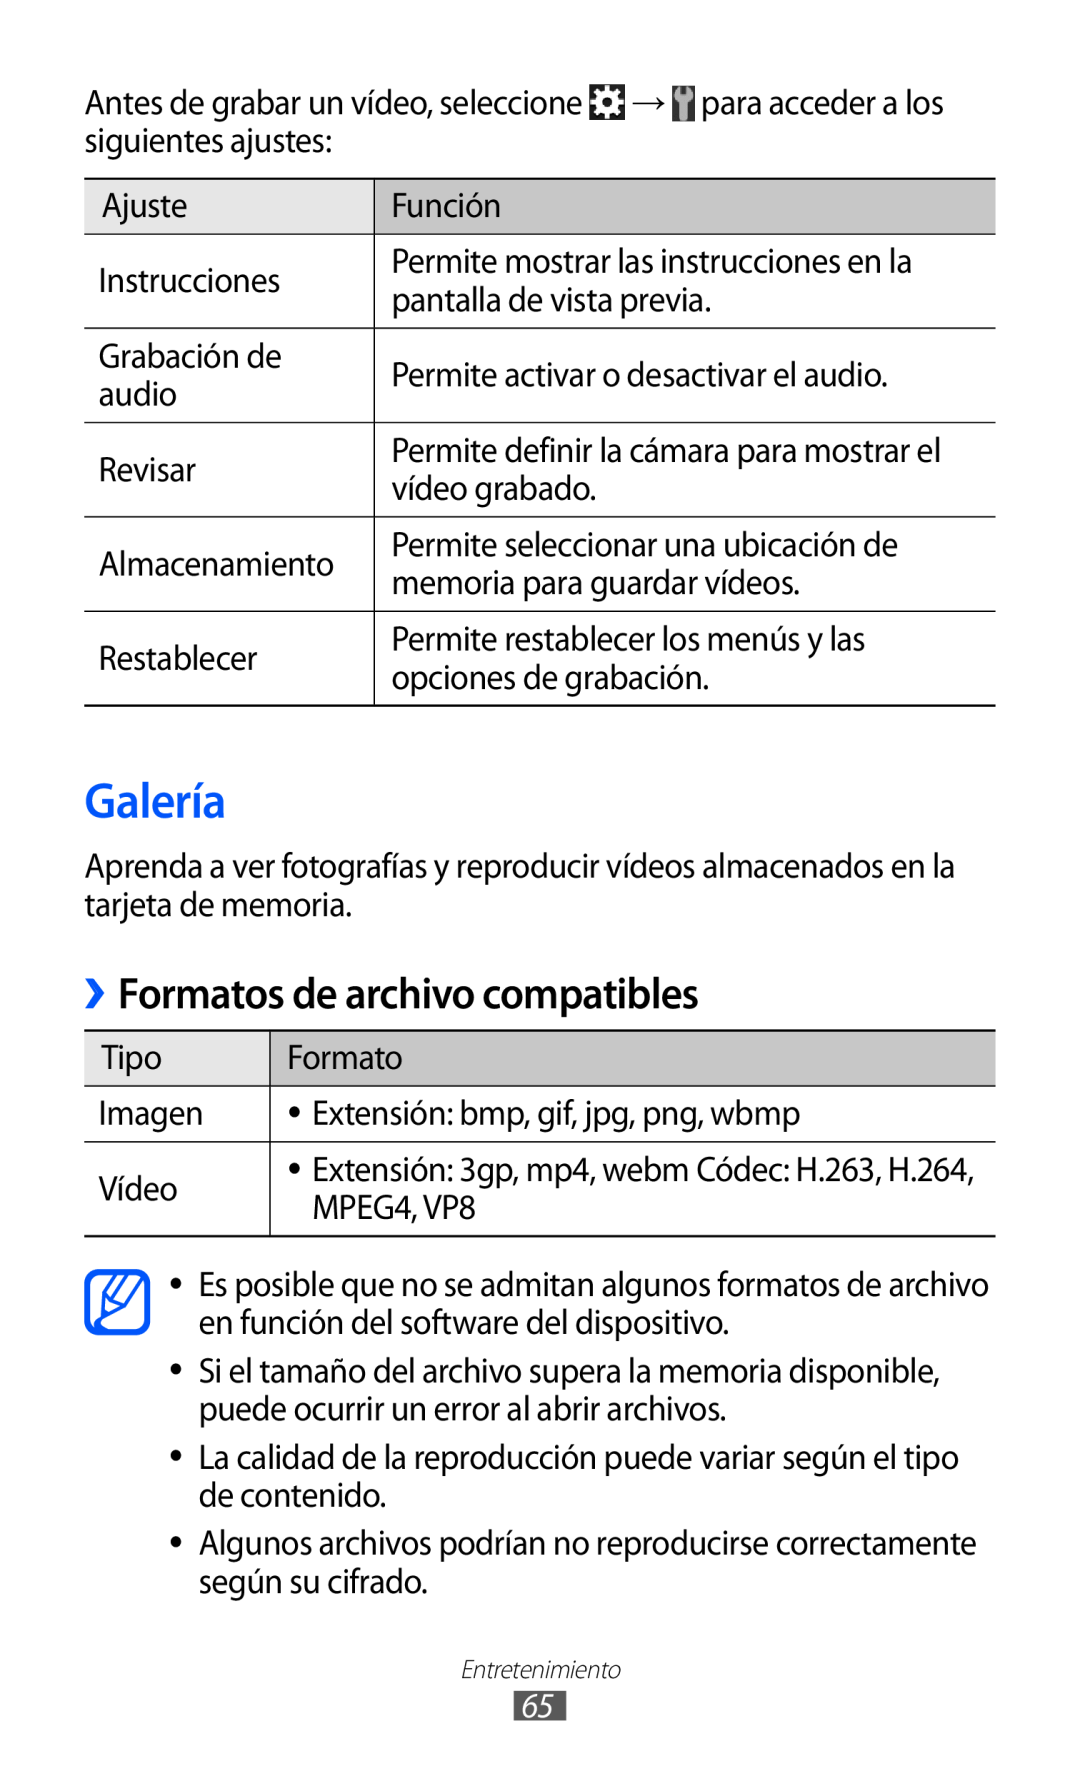 Samsung GT-S6500RWDTPH, GT-S6500RWDTMN, GT-S6500RWAITV, GT-S6500XKADBT manual Galería, Formatos de archivo compatibles 